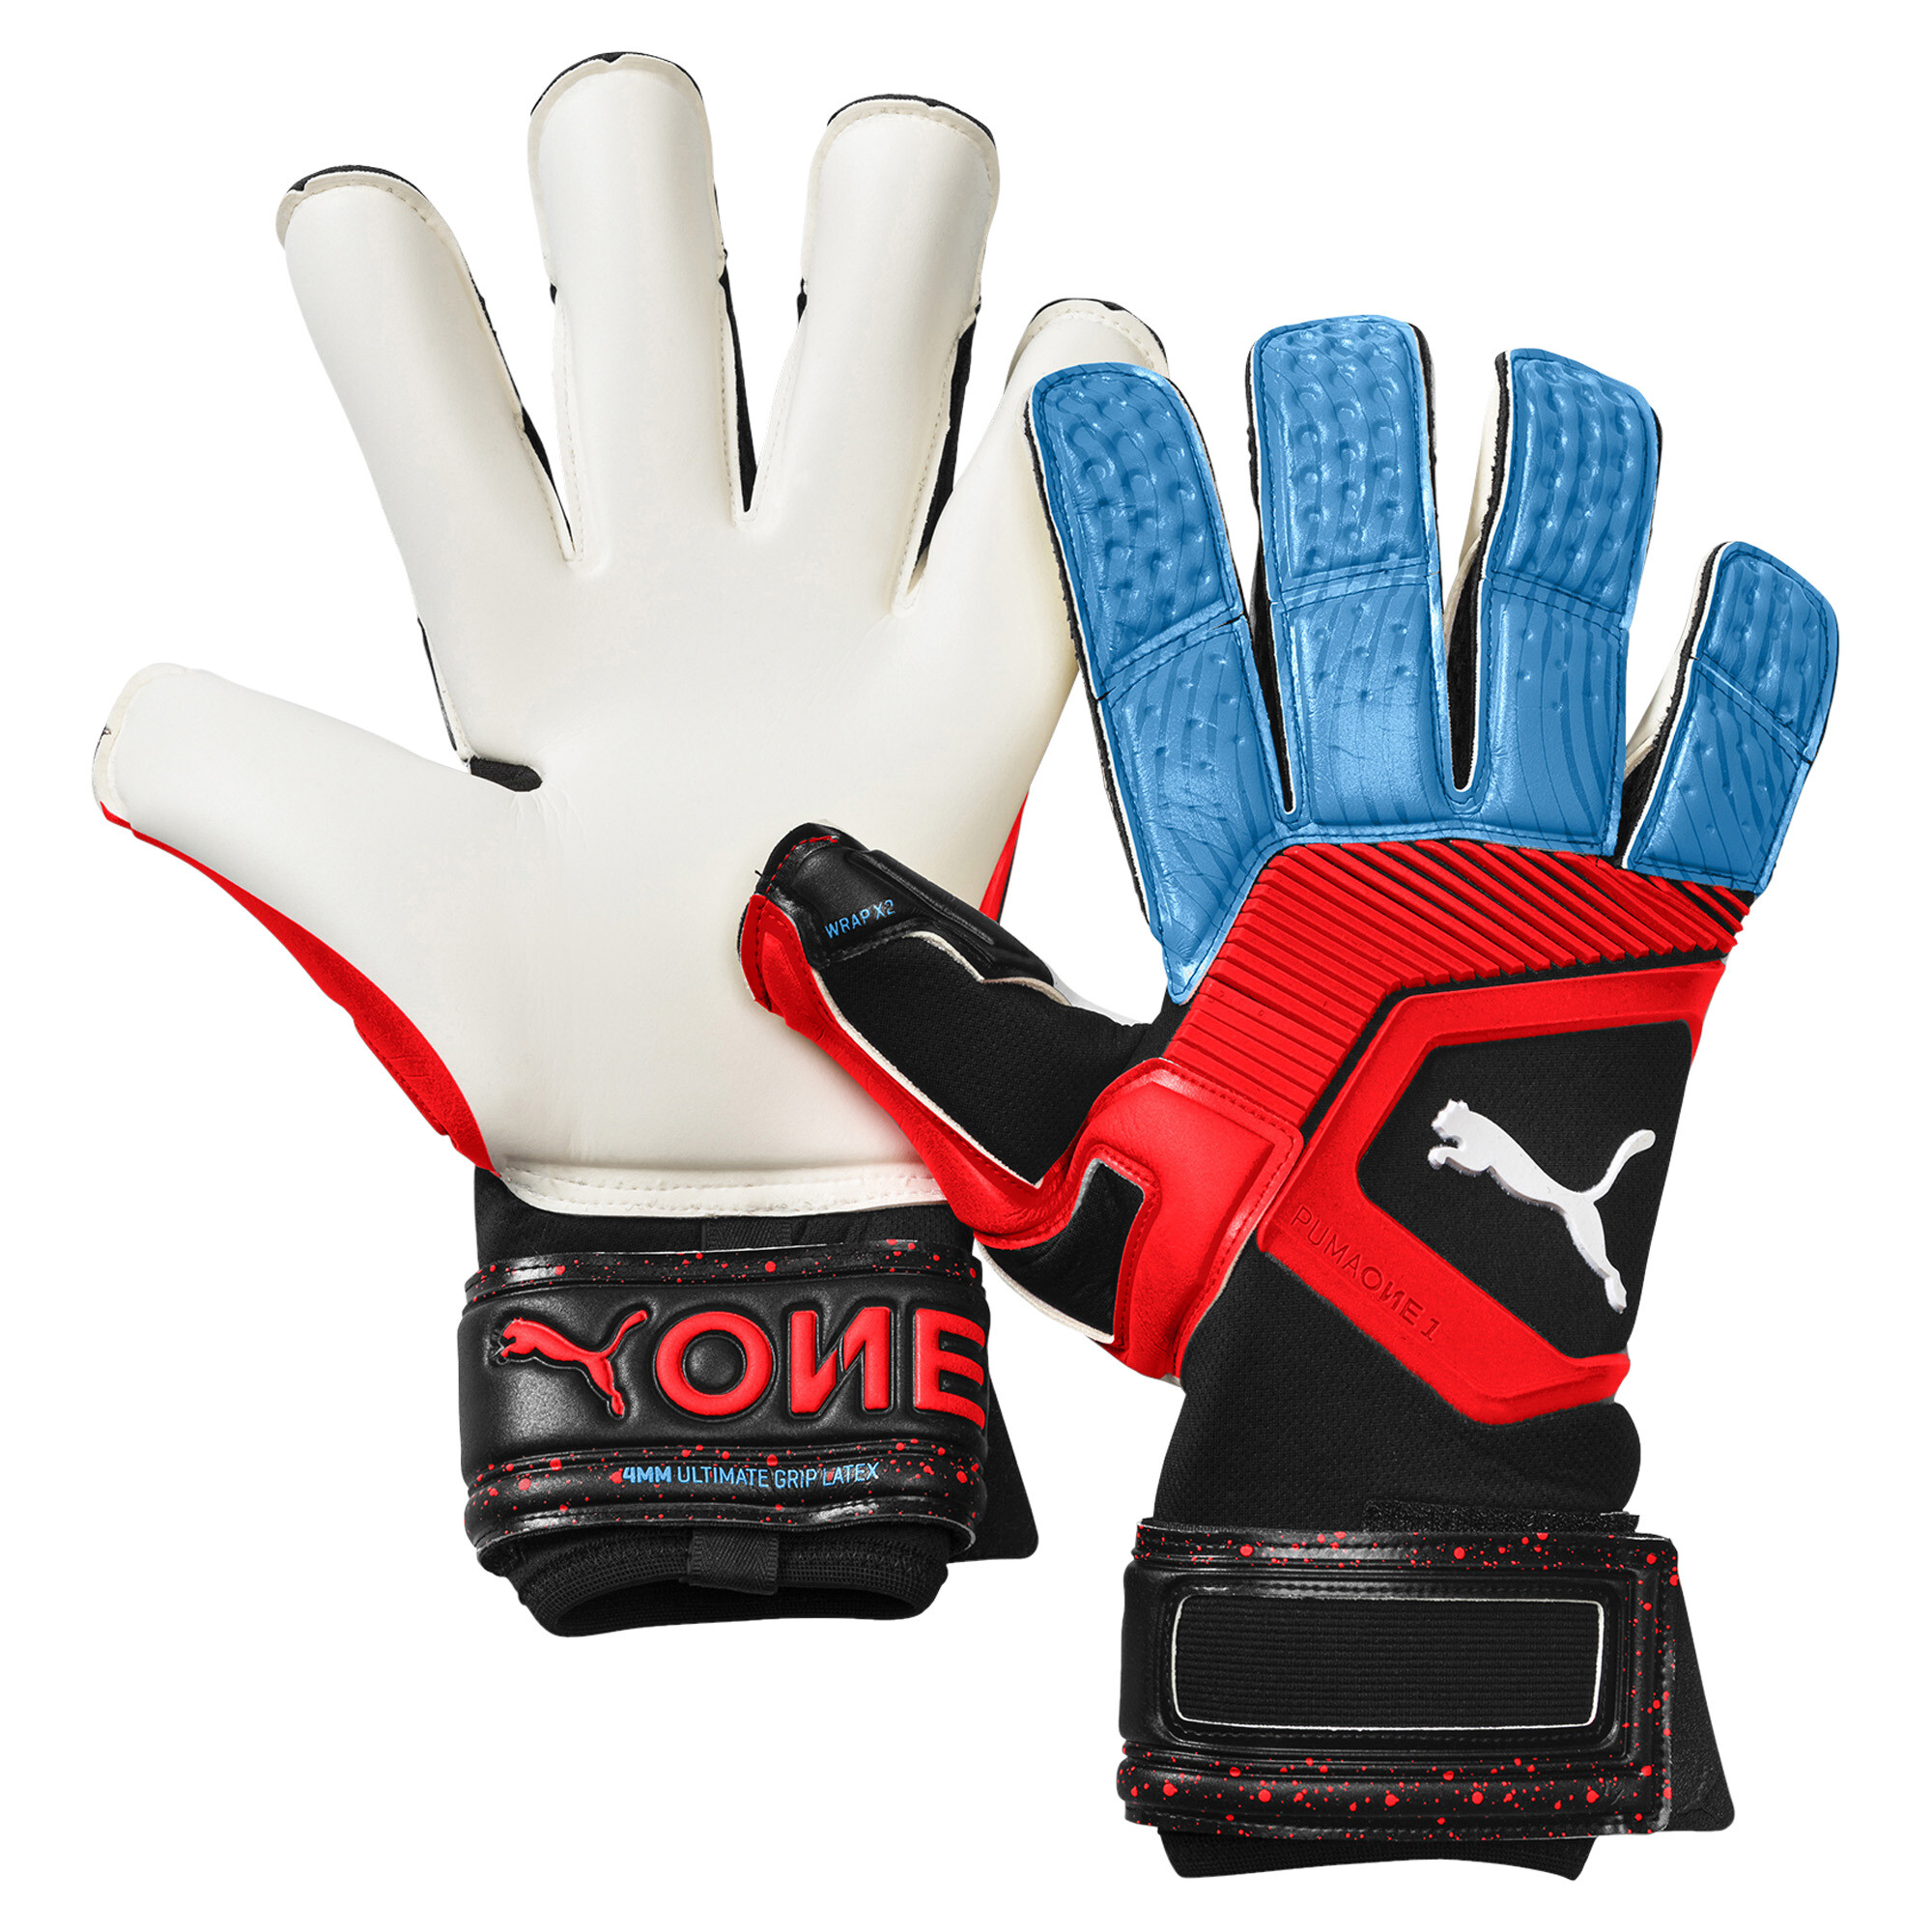 new puma goalkeeper gloves